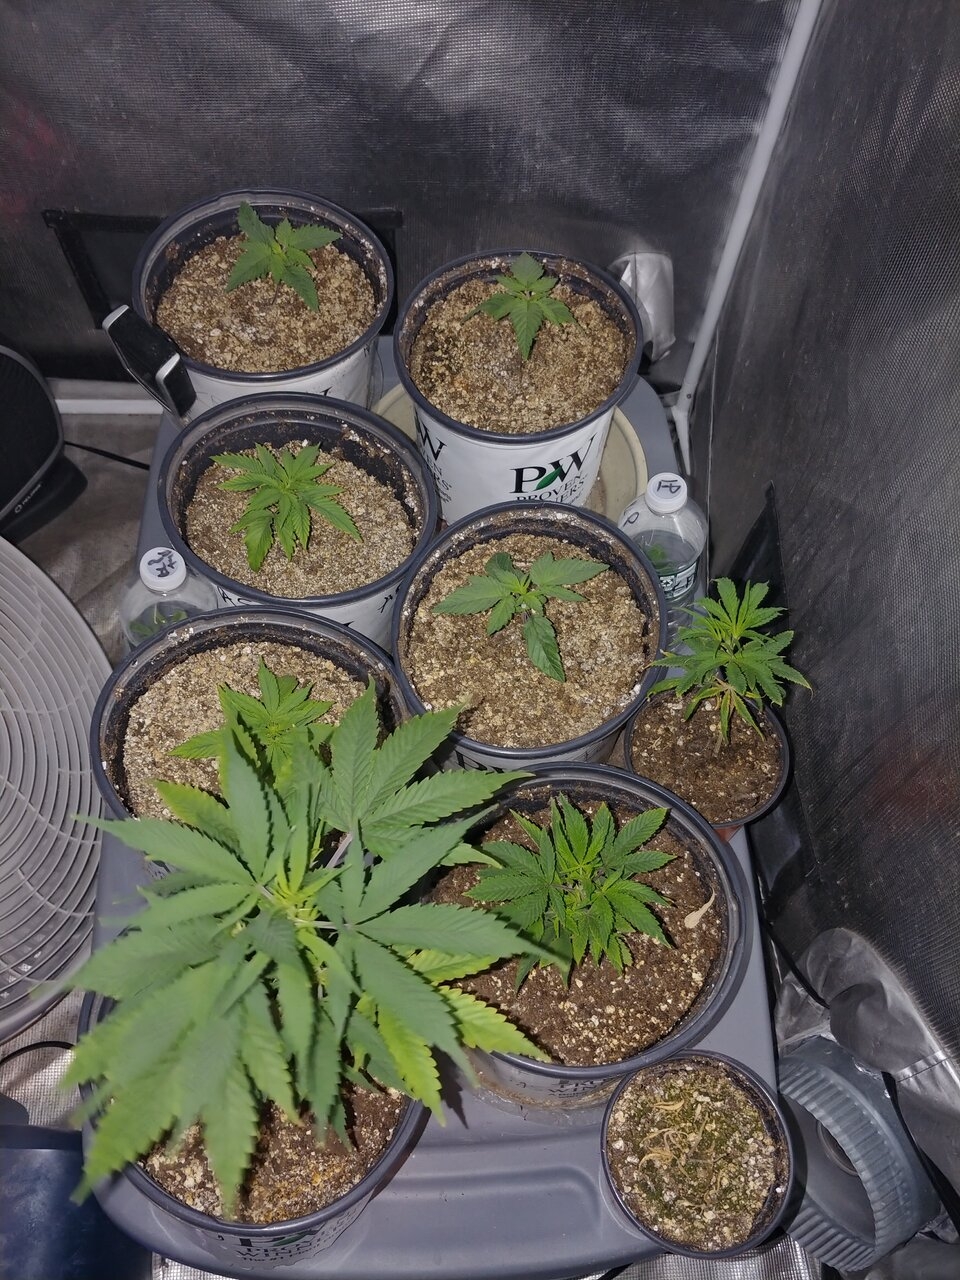 Seedlings and clones